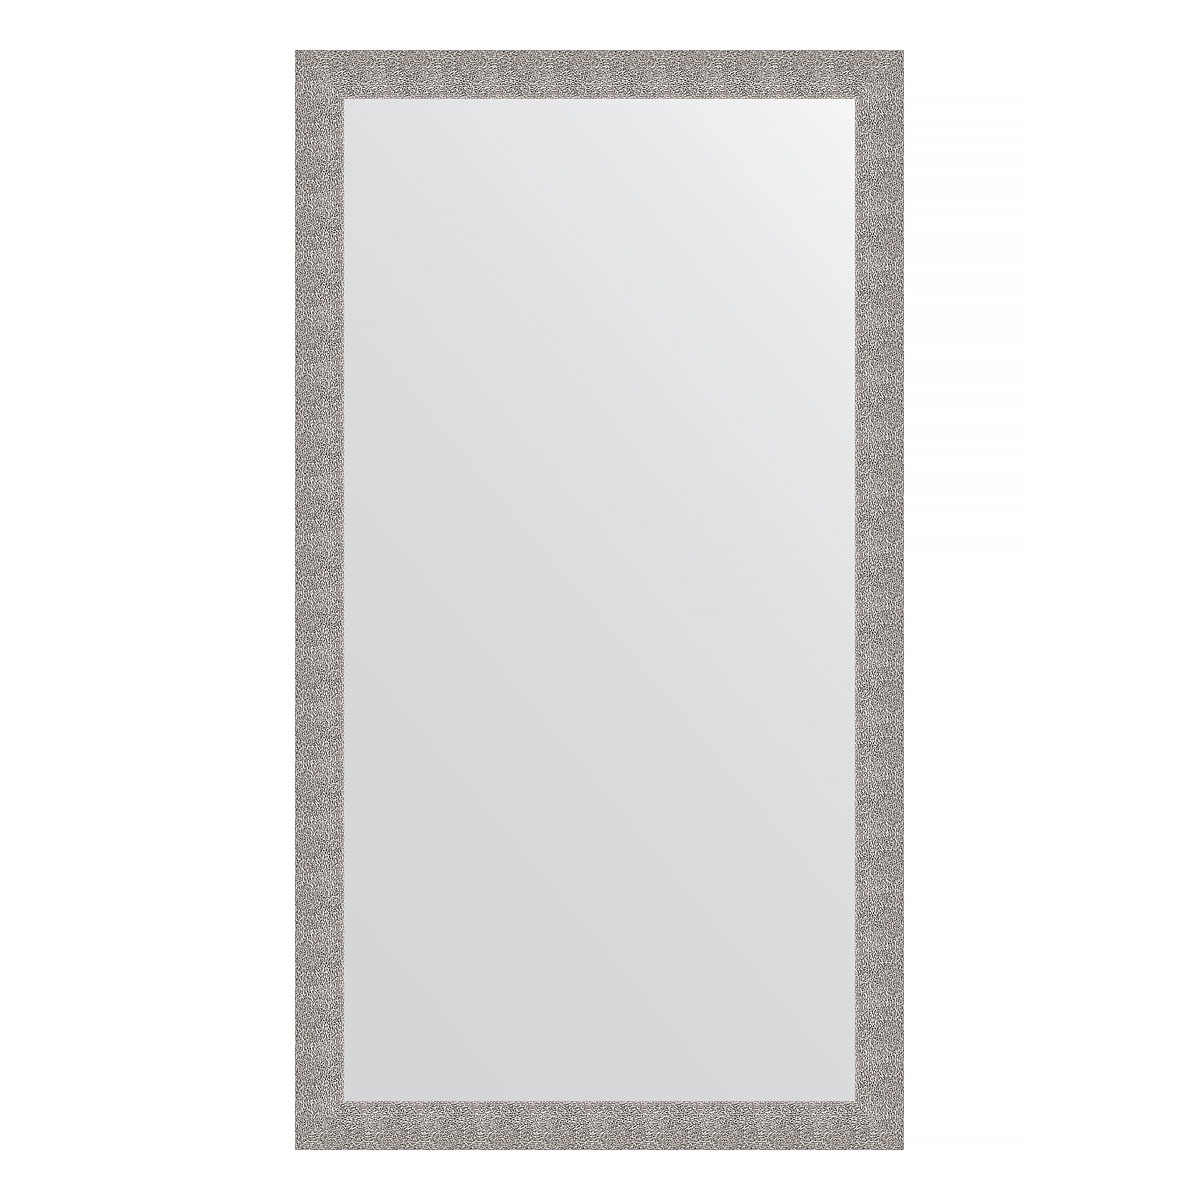 Зеркало напольное в багетной раме Evoform чеканка серебряная 90 мм 111x201 см зеркало напольное с гравировкой в багетной раме evoform чеканка серебряная 90 мм 111x201 см